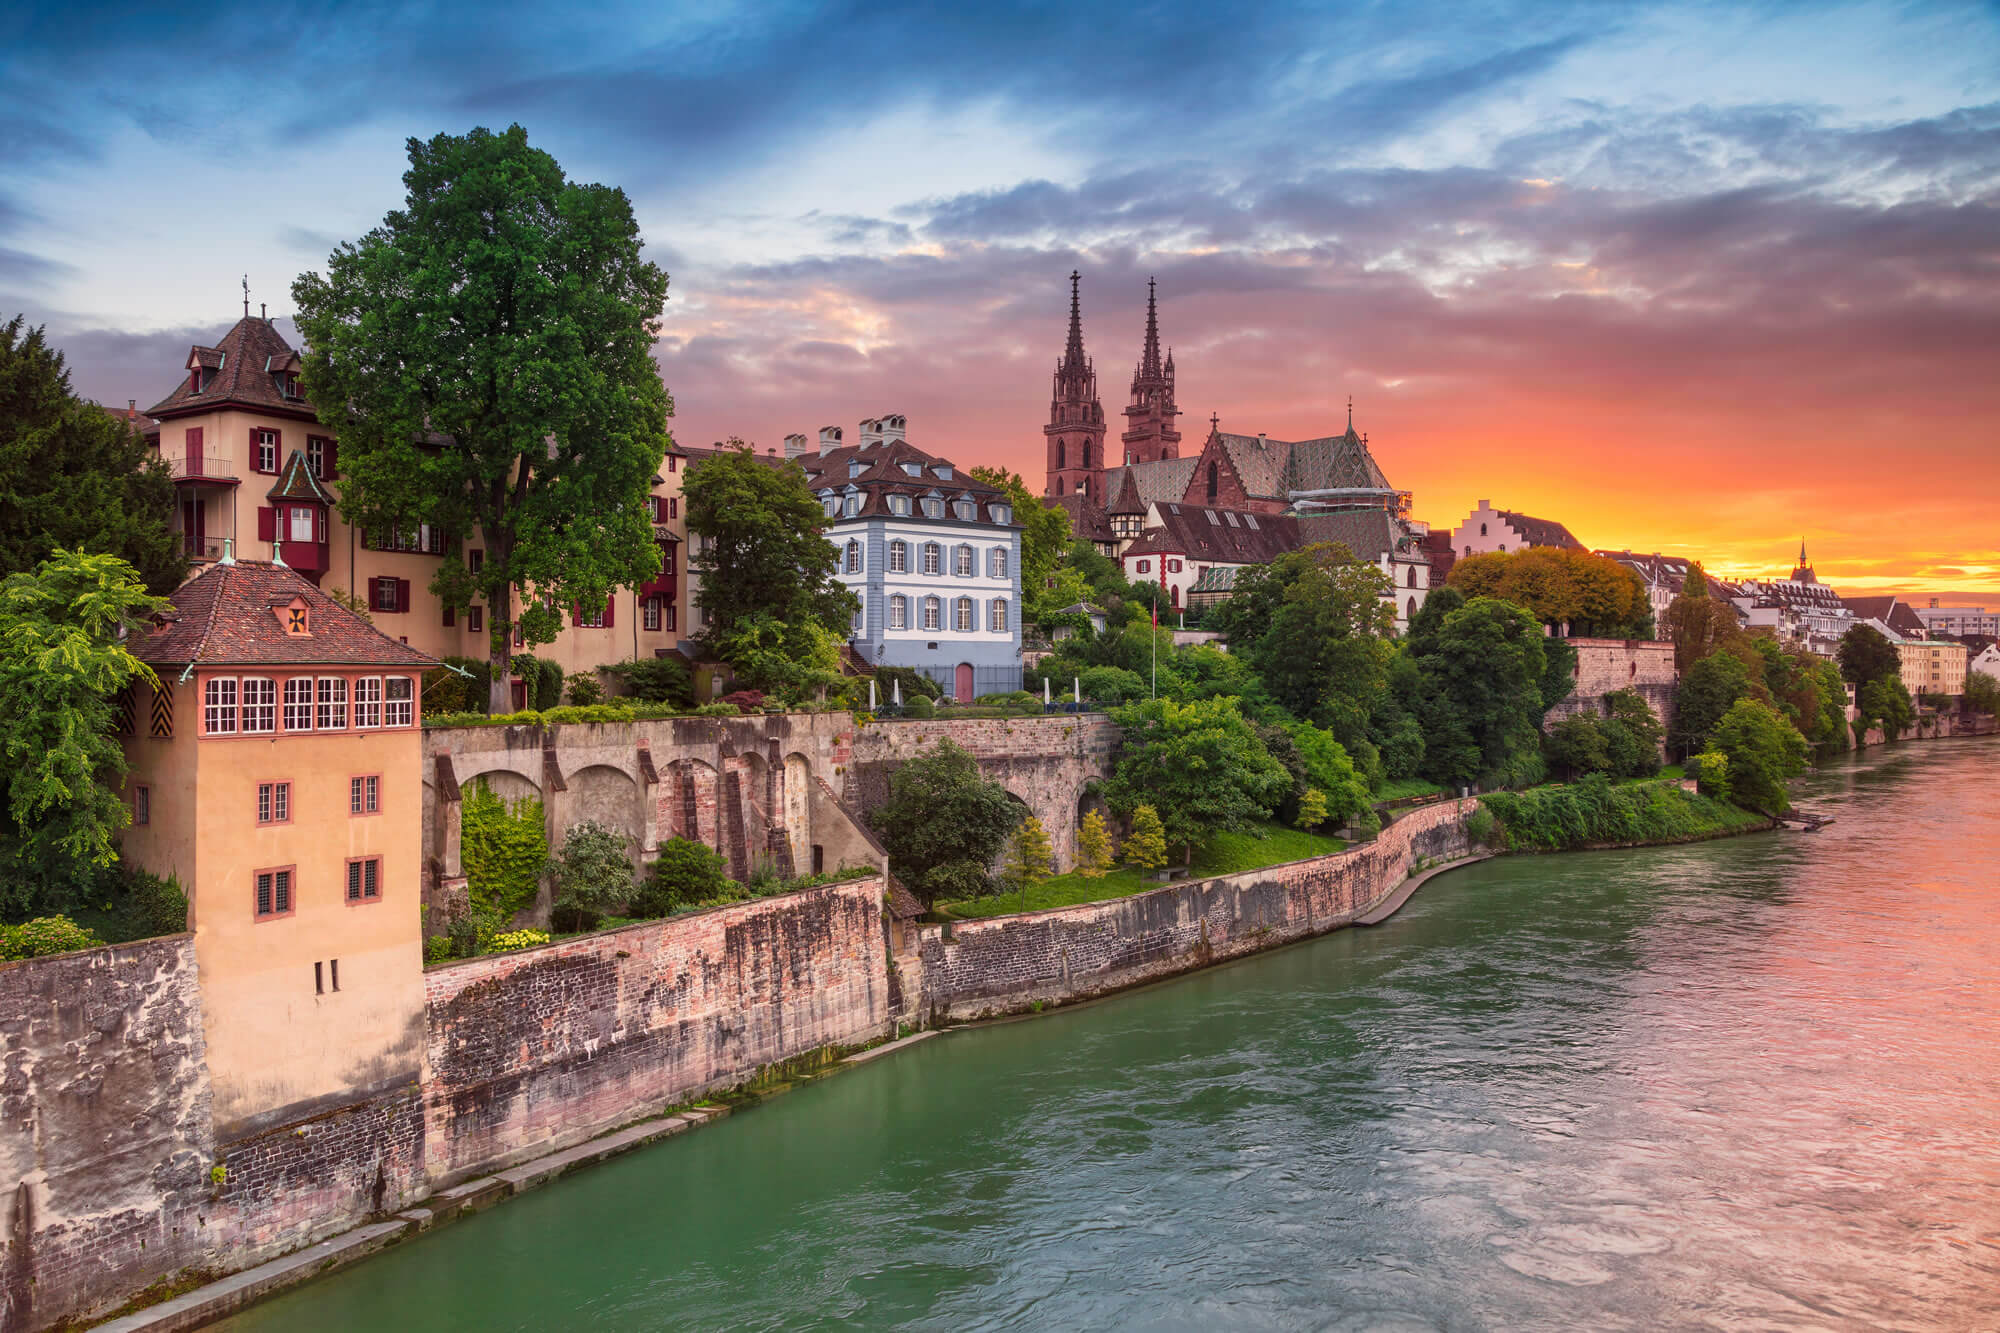 Cityscape Image of Basel, Switzerland